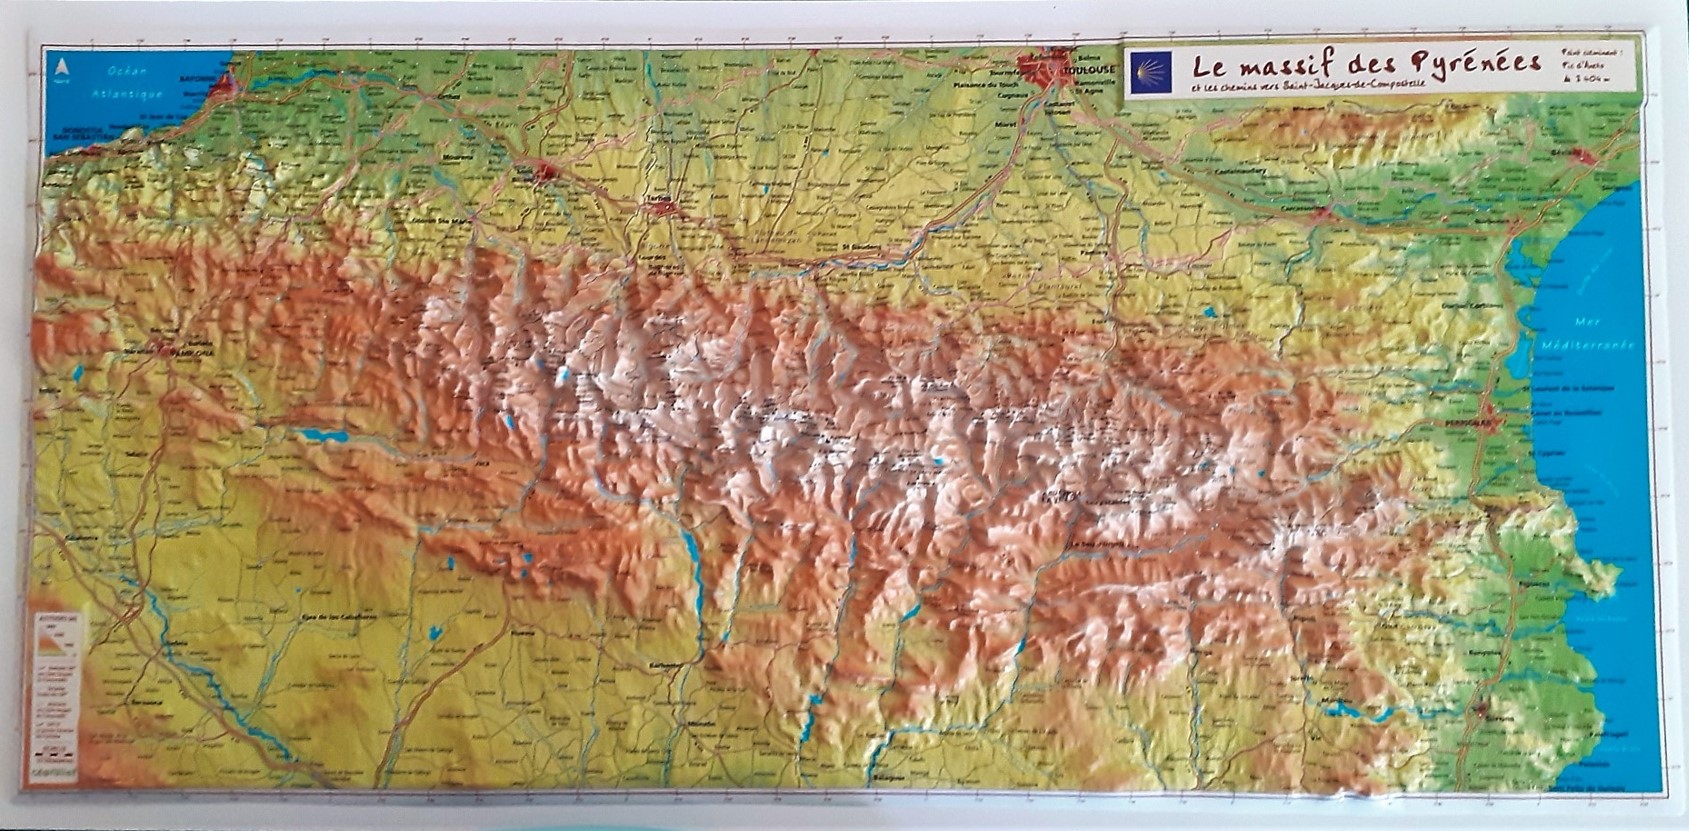 Le Massif des Pyrénées et les chemins vers St Jacques de Compostelle